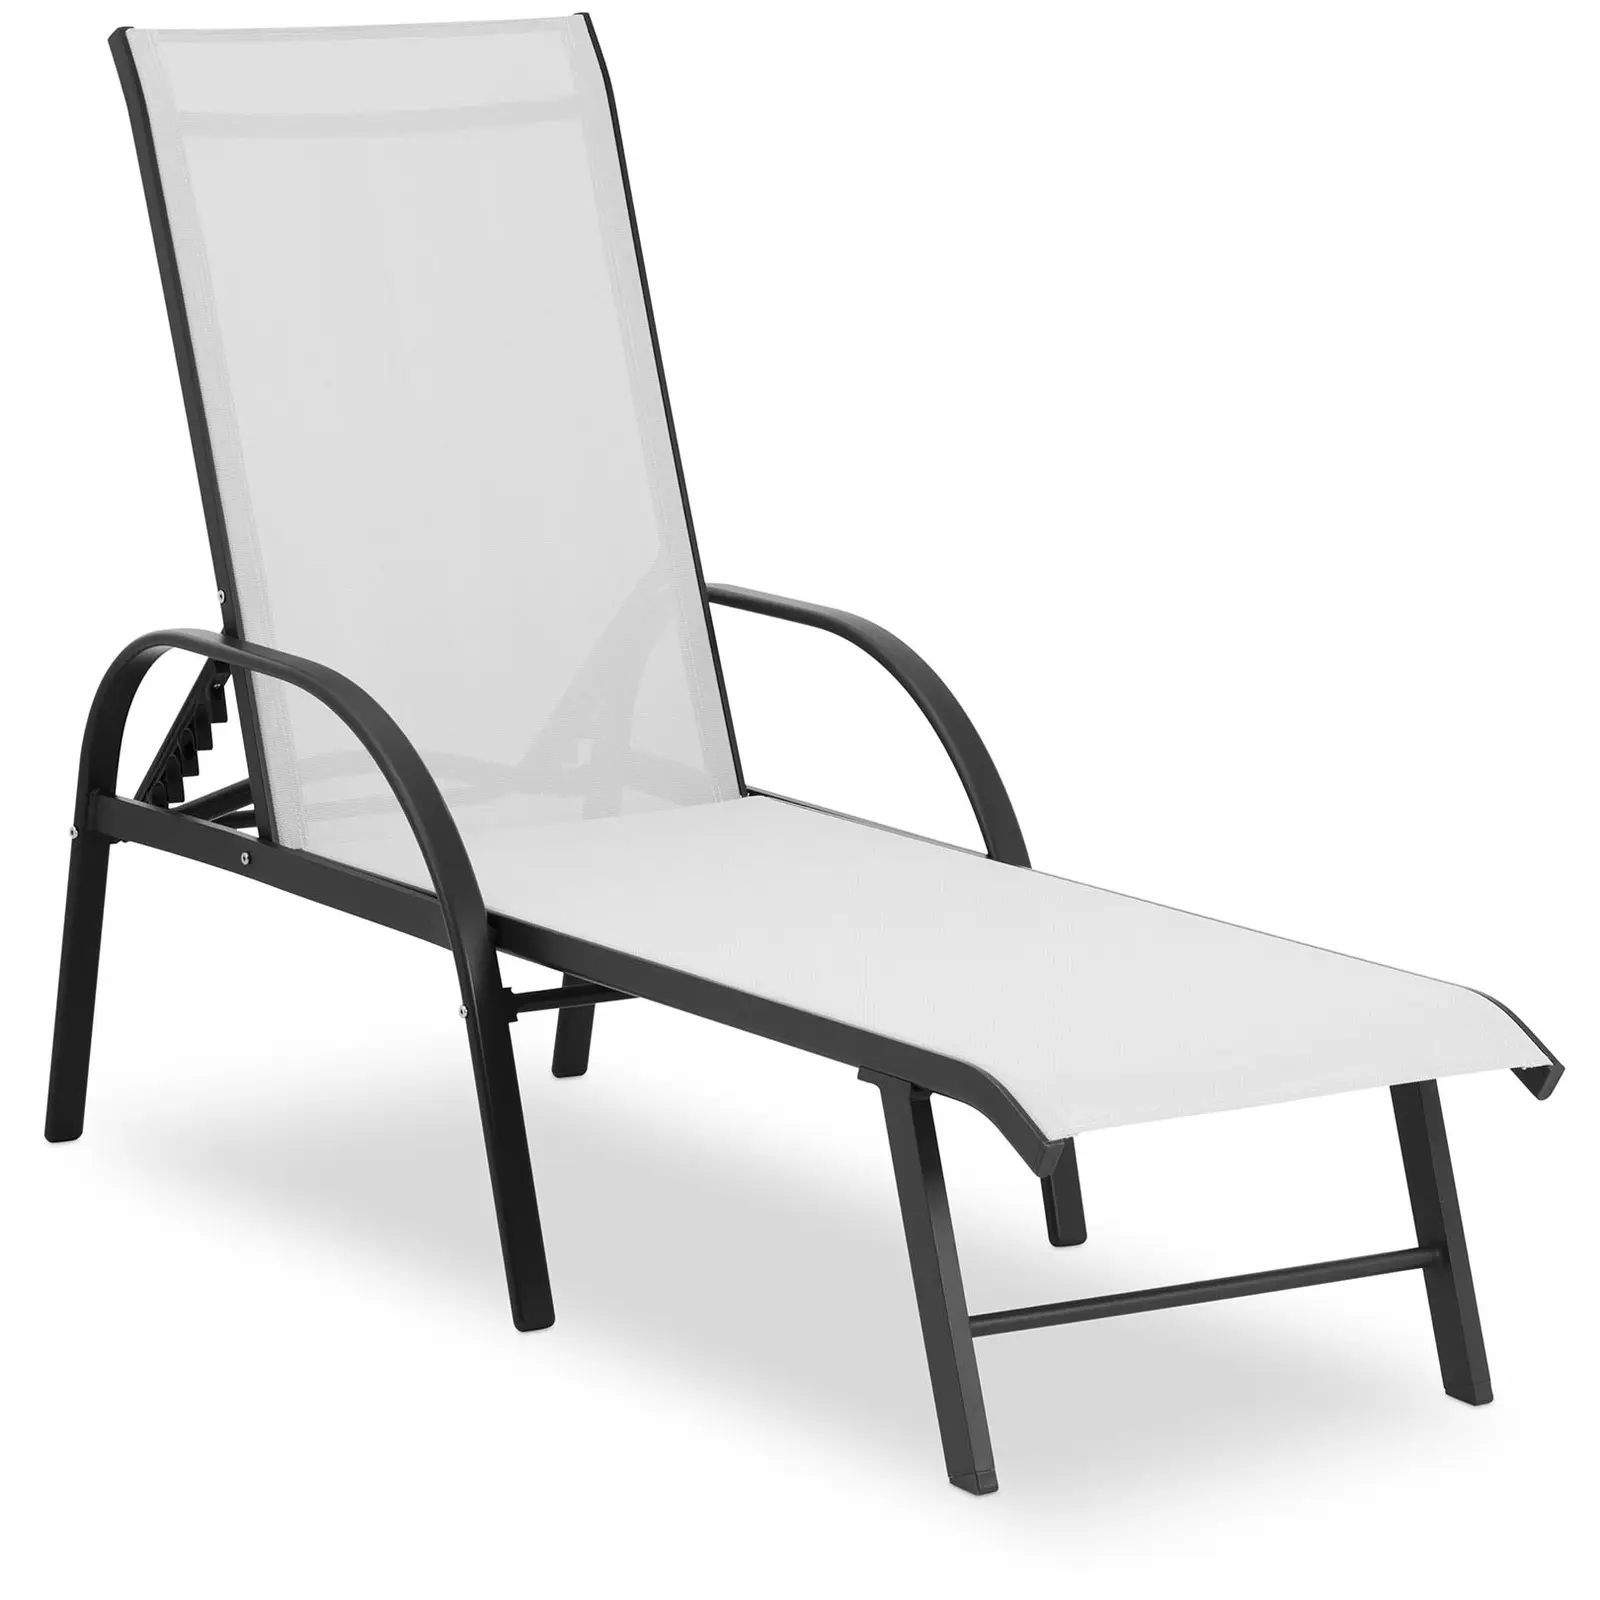 Chaise longue de jardin - Gris pâle - Structure en aluminium - Dossier réglable